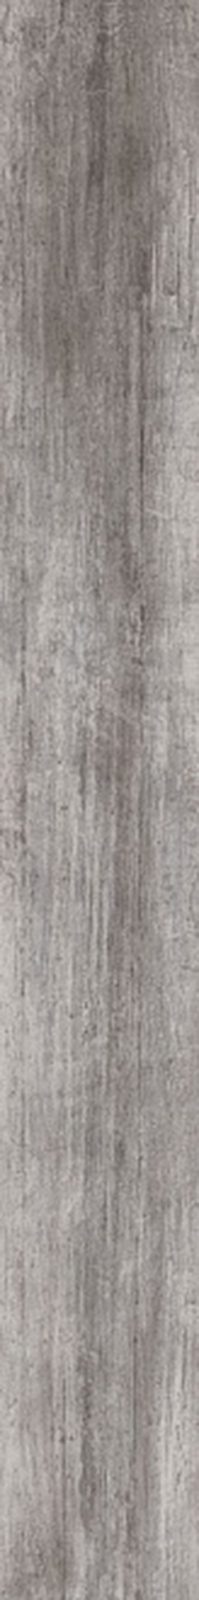 Антик Вуд Керамогранит серый обрезной DL750600R 20×160 (Малино)